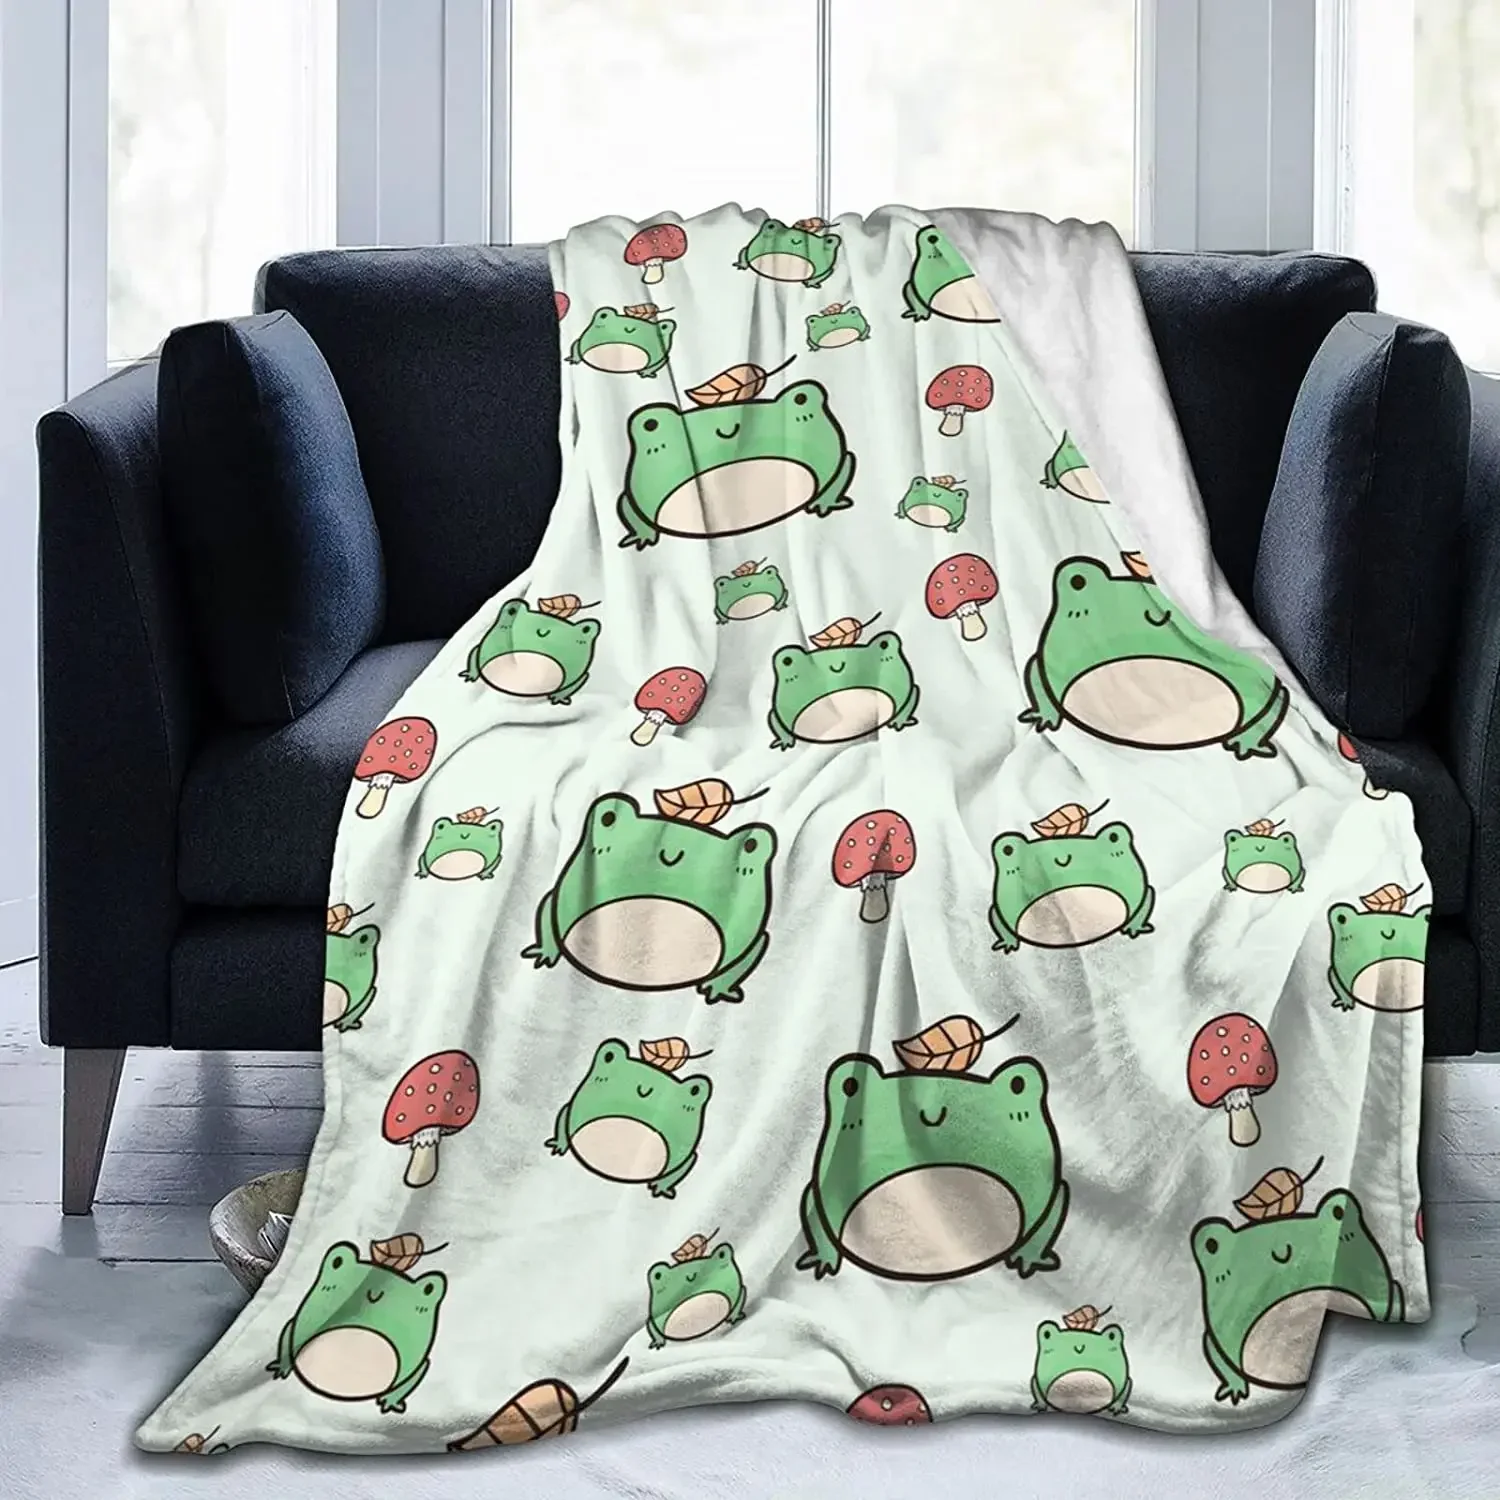 

Милое зеленое искусственное мягкое тонкое фланелевое одеяло, пушистое уютное пушистое одеяло, не линяет для сна, кровати, дивана, кушетки, домашний декор